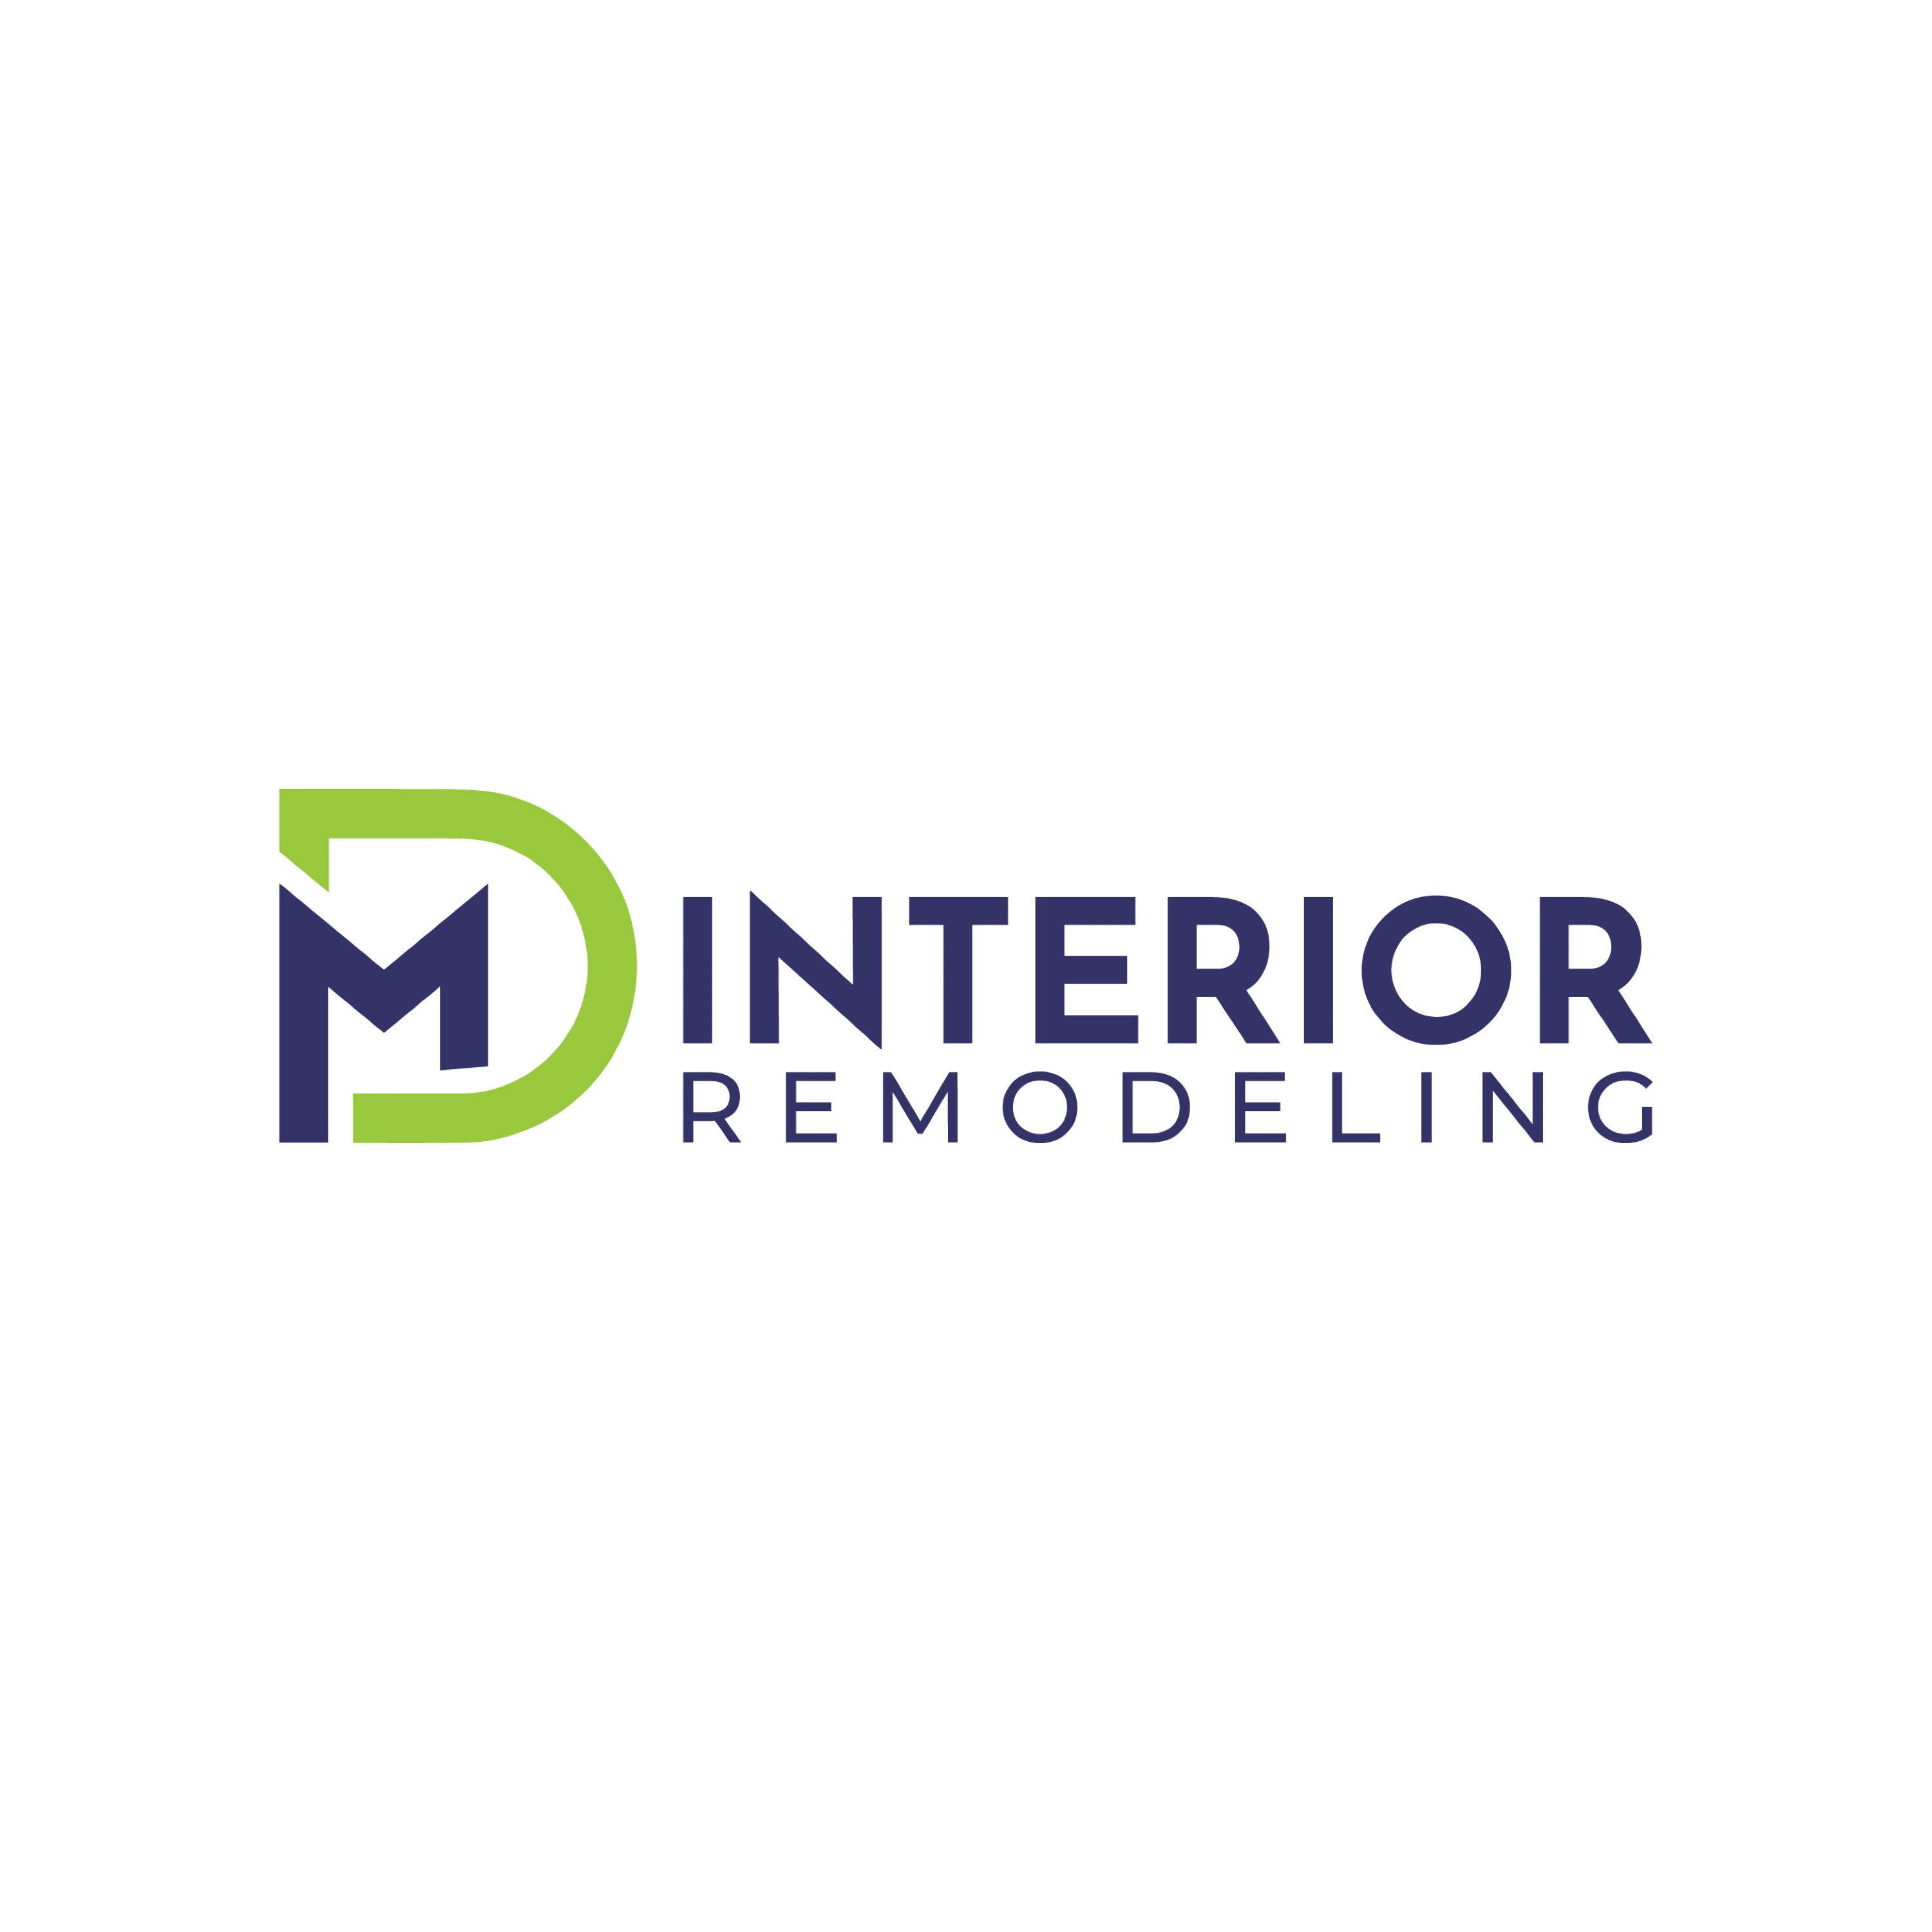 DM Interior Remodeling Logo